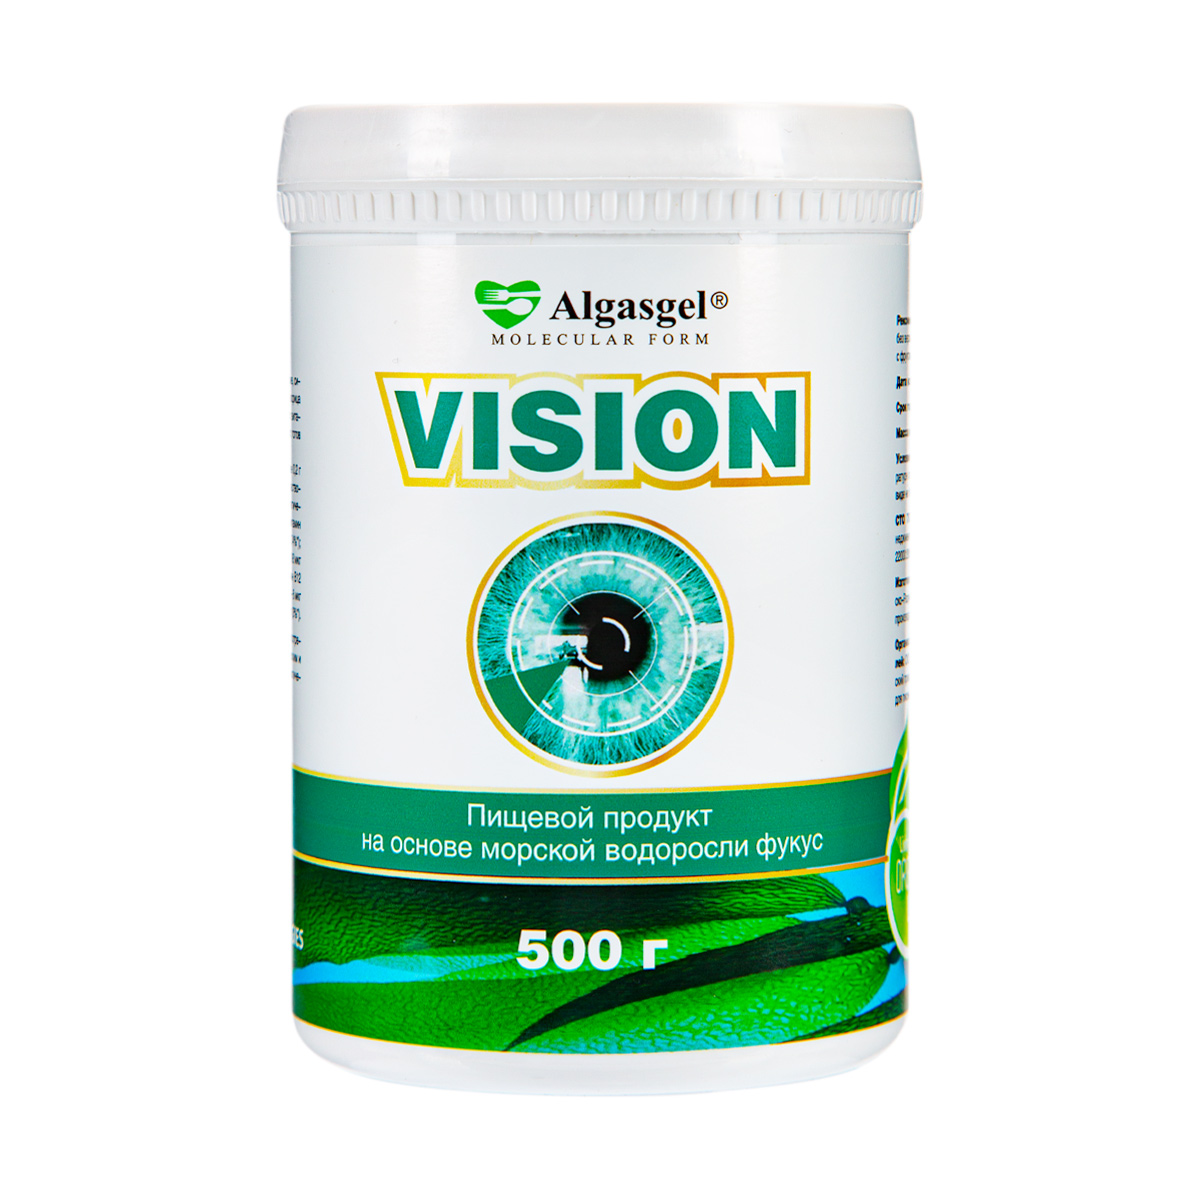 algasgel superfit для здорового похудения 500 г Algasgel Vision для здоровья глаз (500 г)